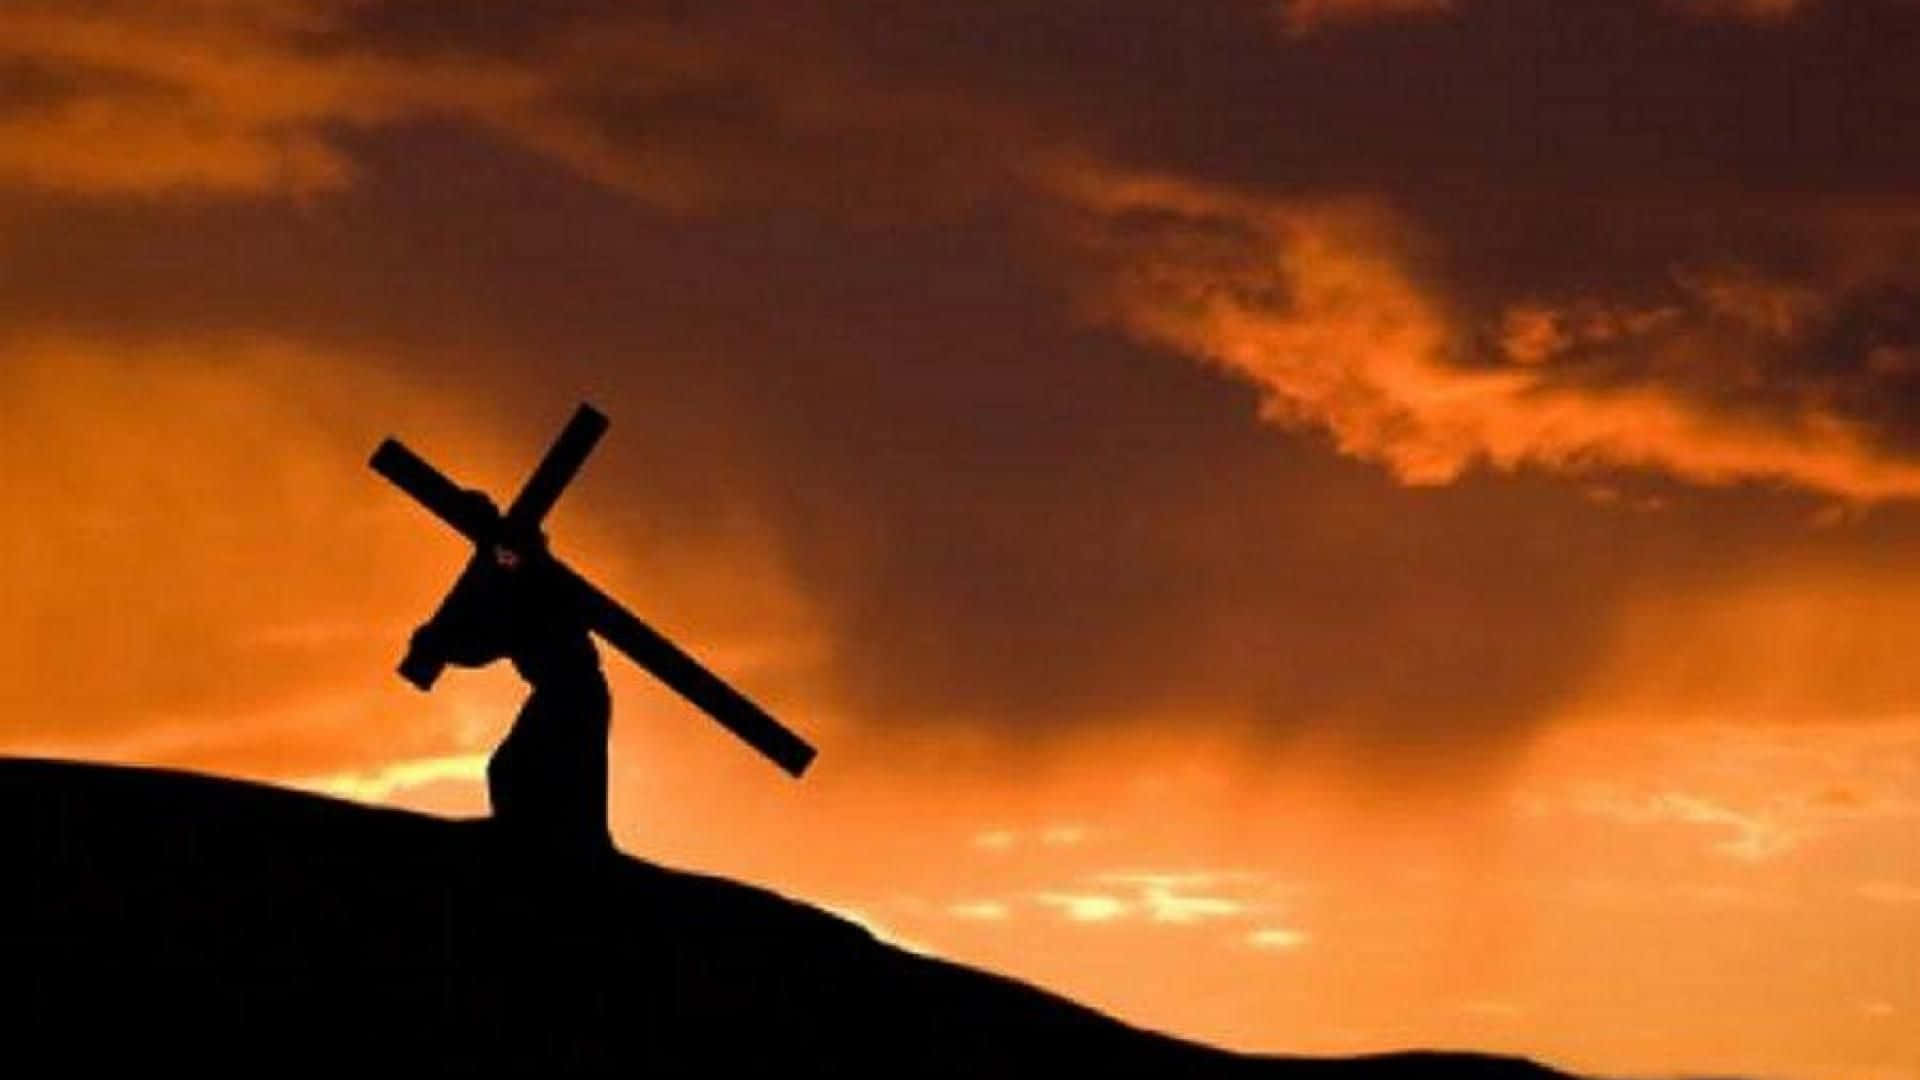 Imagende Jesús En La Cruz Con El Cielo Anaranjado